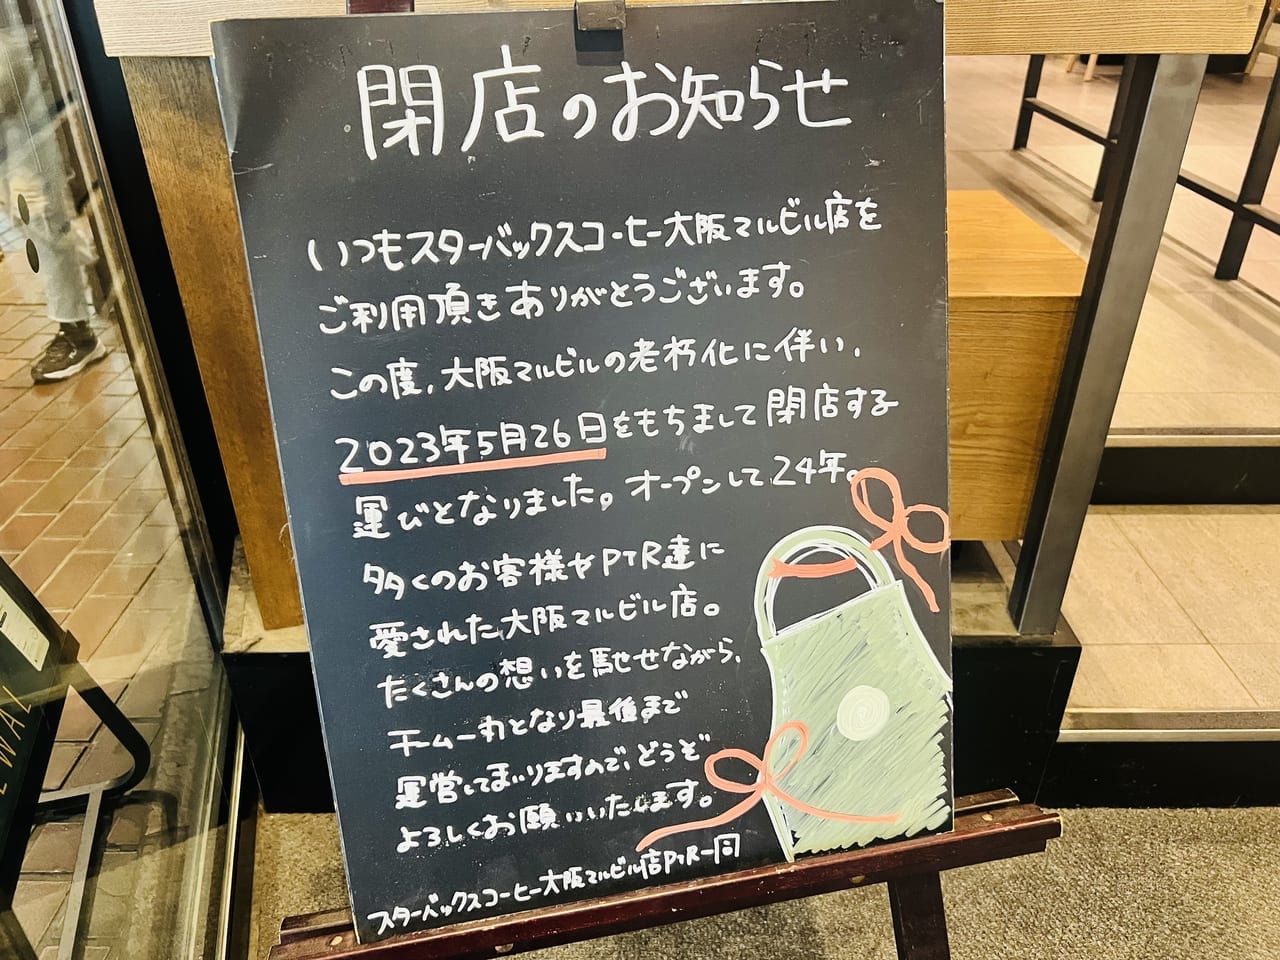 スターバックスコーヒー大阪マルビル店